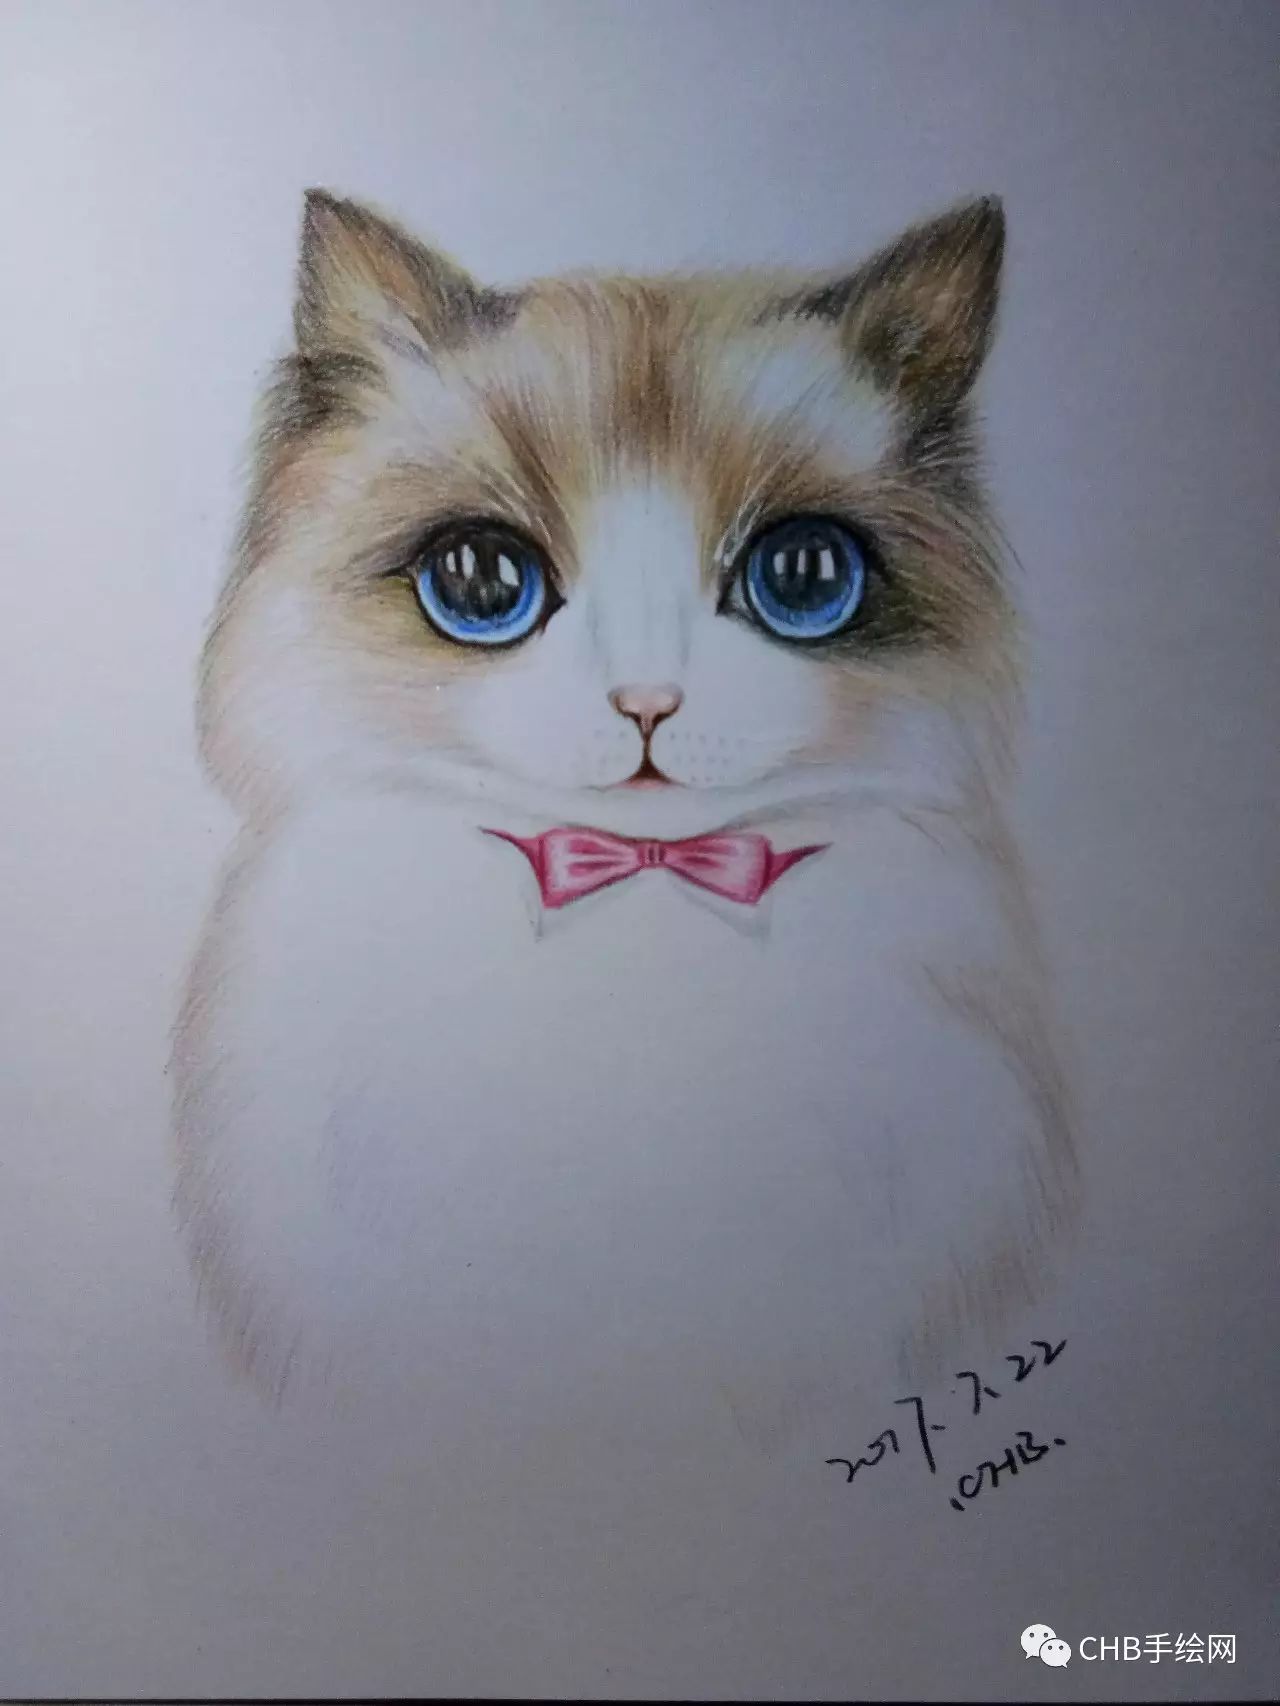 一起来画萌宠吧:彩铅小猫绘画过程分享